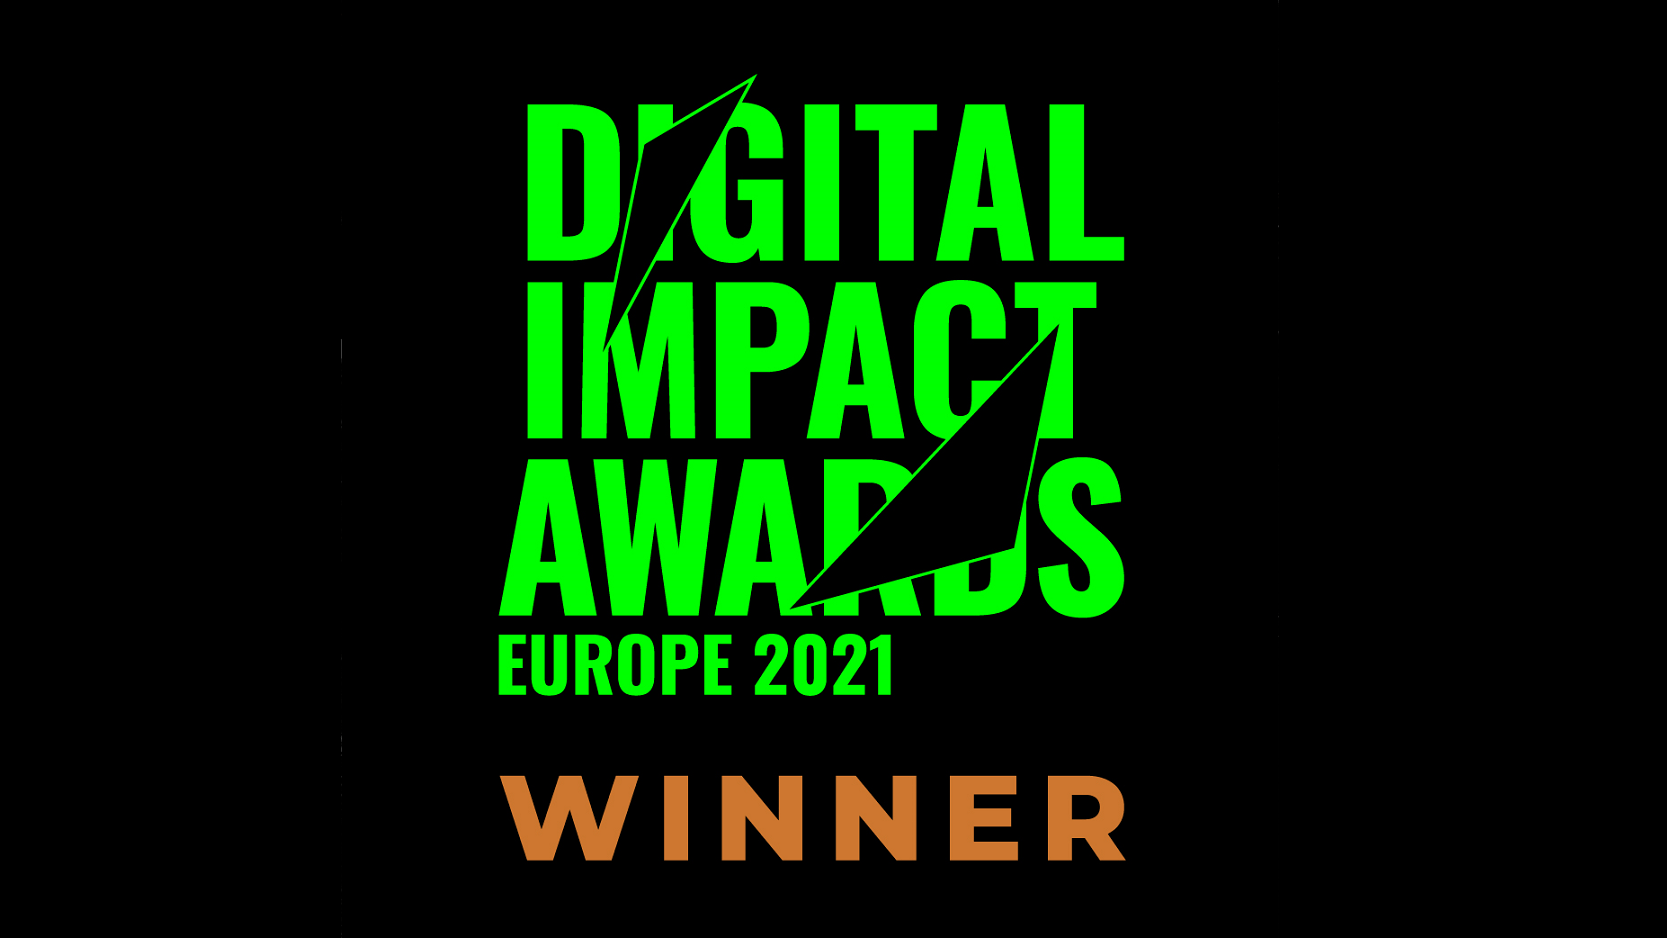 Digital Impact Award winner